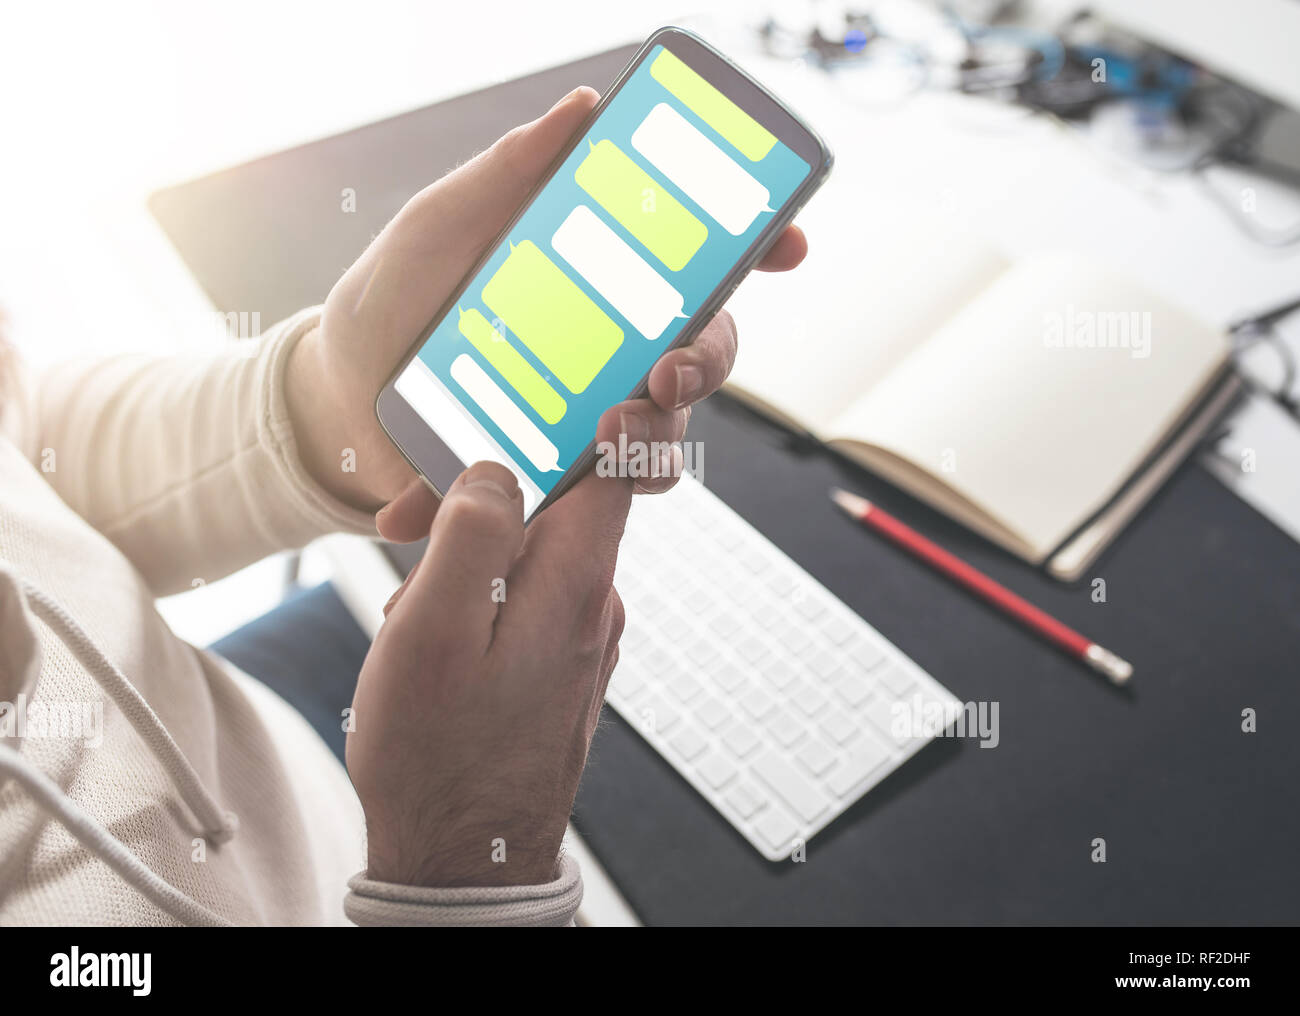 La persona utilizando messaging app mock-up en smartphone en escritorio de oficina Foto de stock